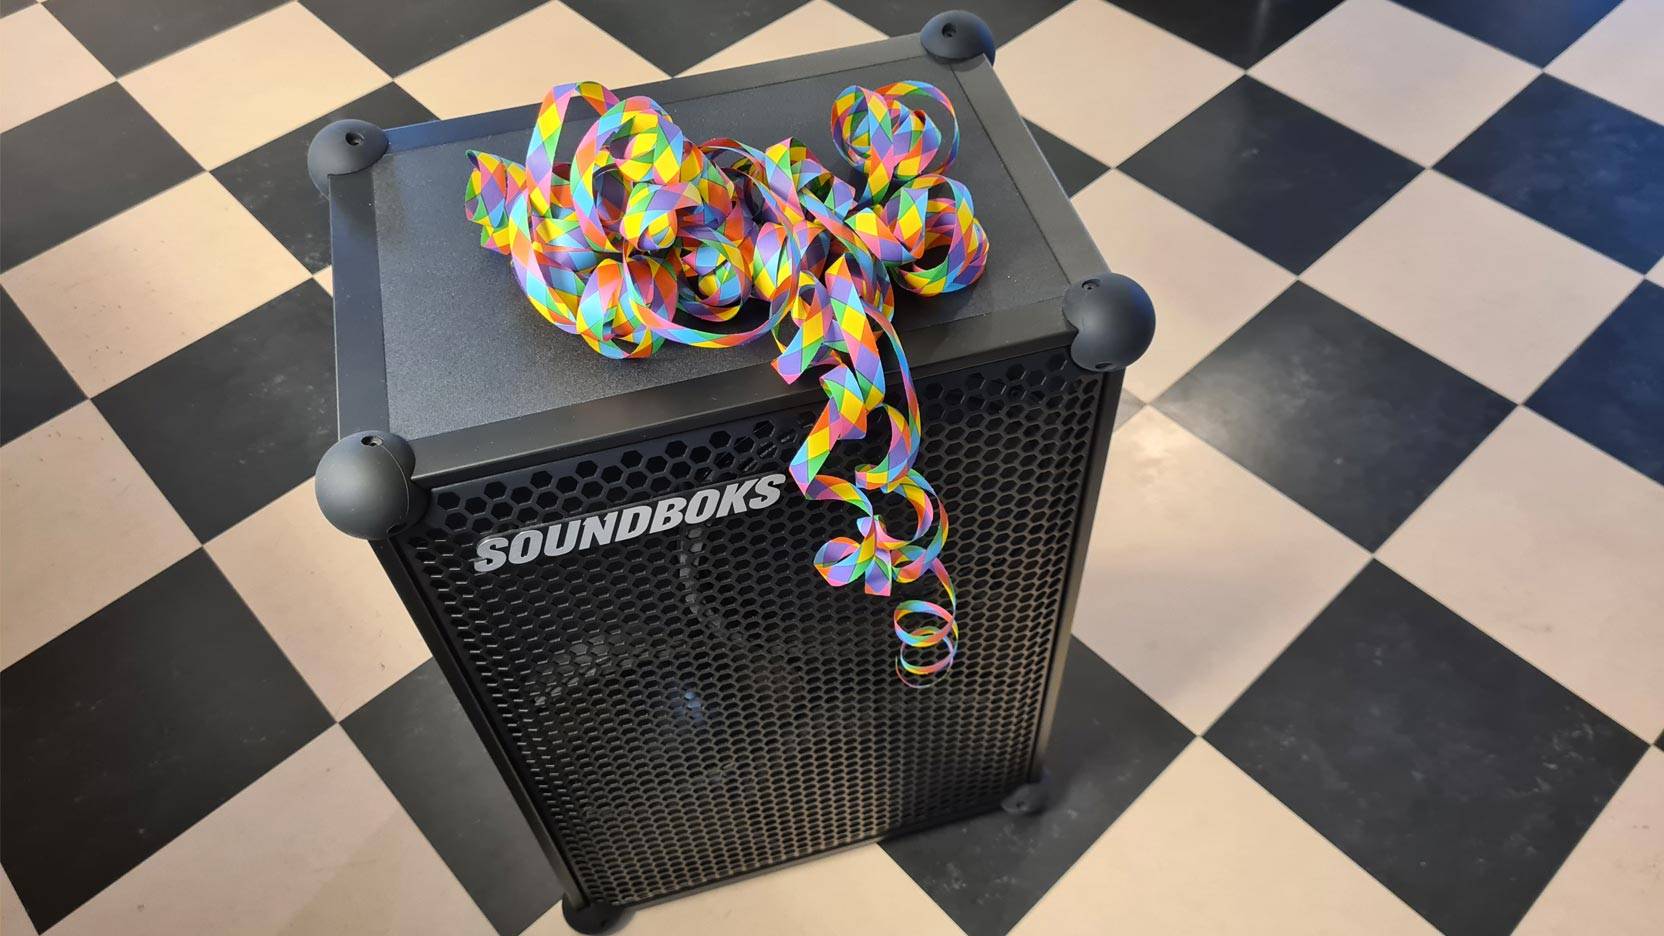 Billede fra test af Bluetooth højttaler Soundboks Gen 3 - festligt pyntet med serpentiner